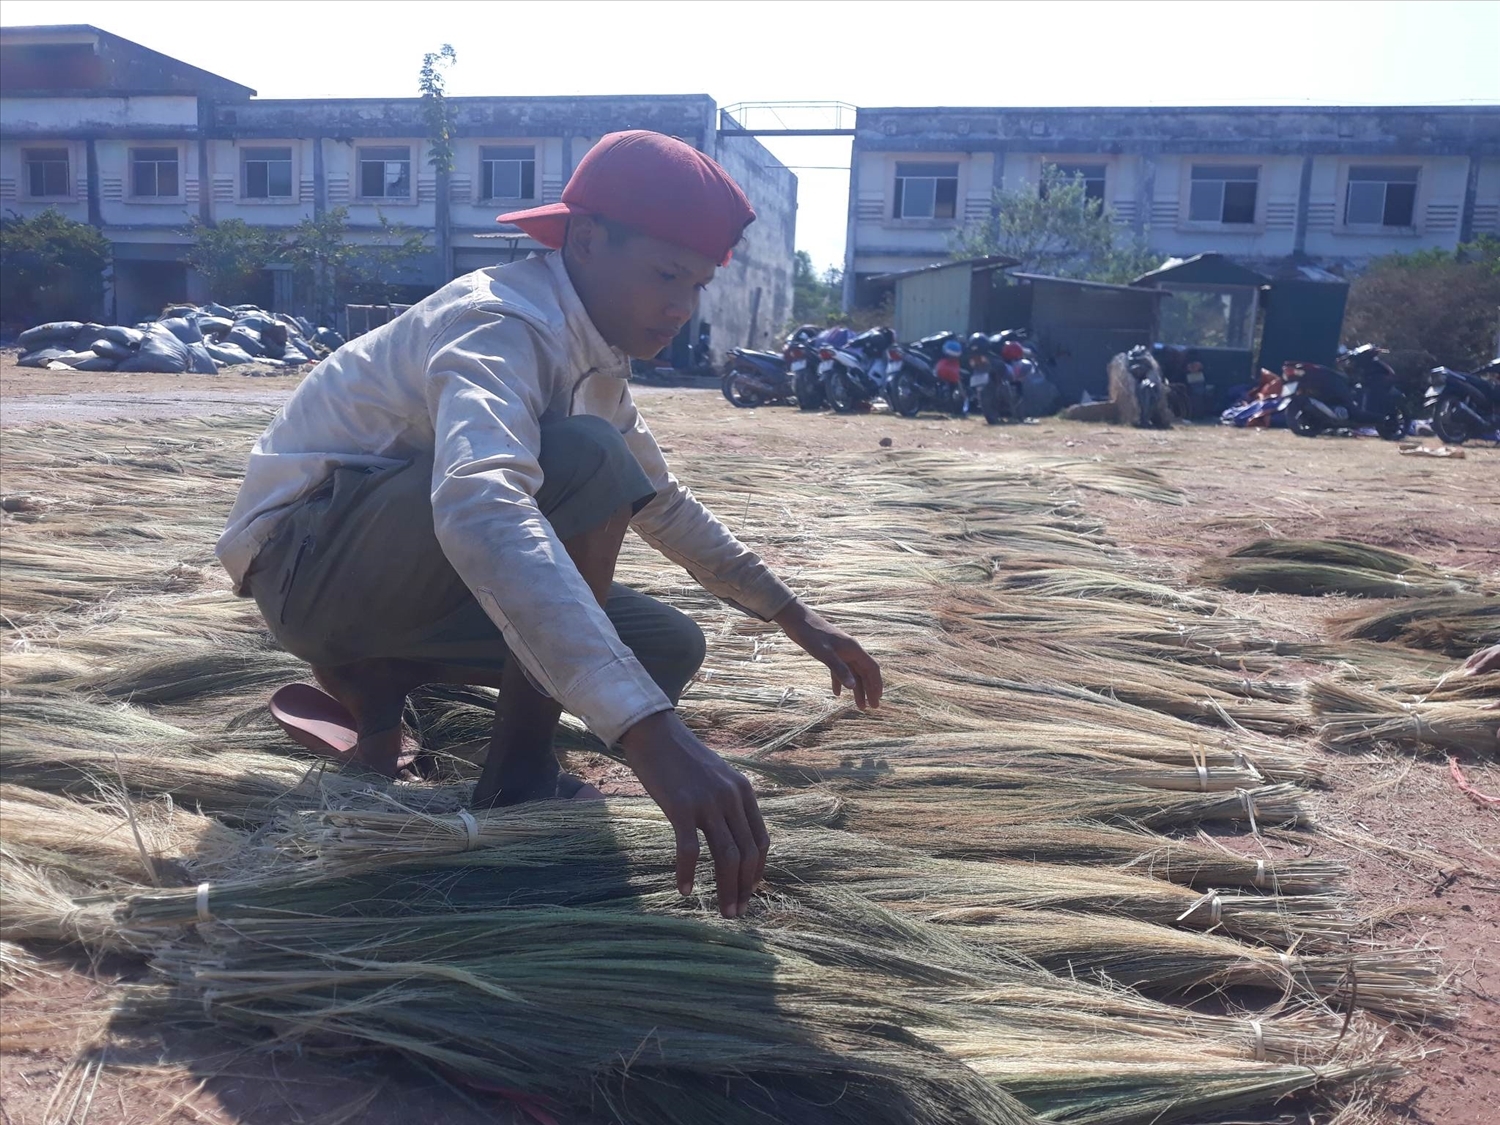 像其他许多劳动者一样，今年的粽叶芦季节也帮助了顼社布鲁-云乔族胡文仁先生拥有一份收入良好和稳定的工作。